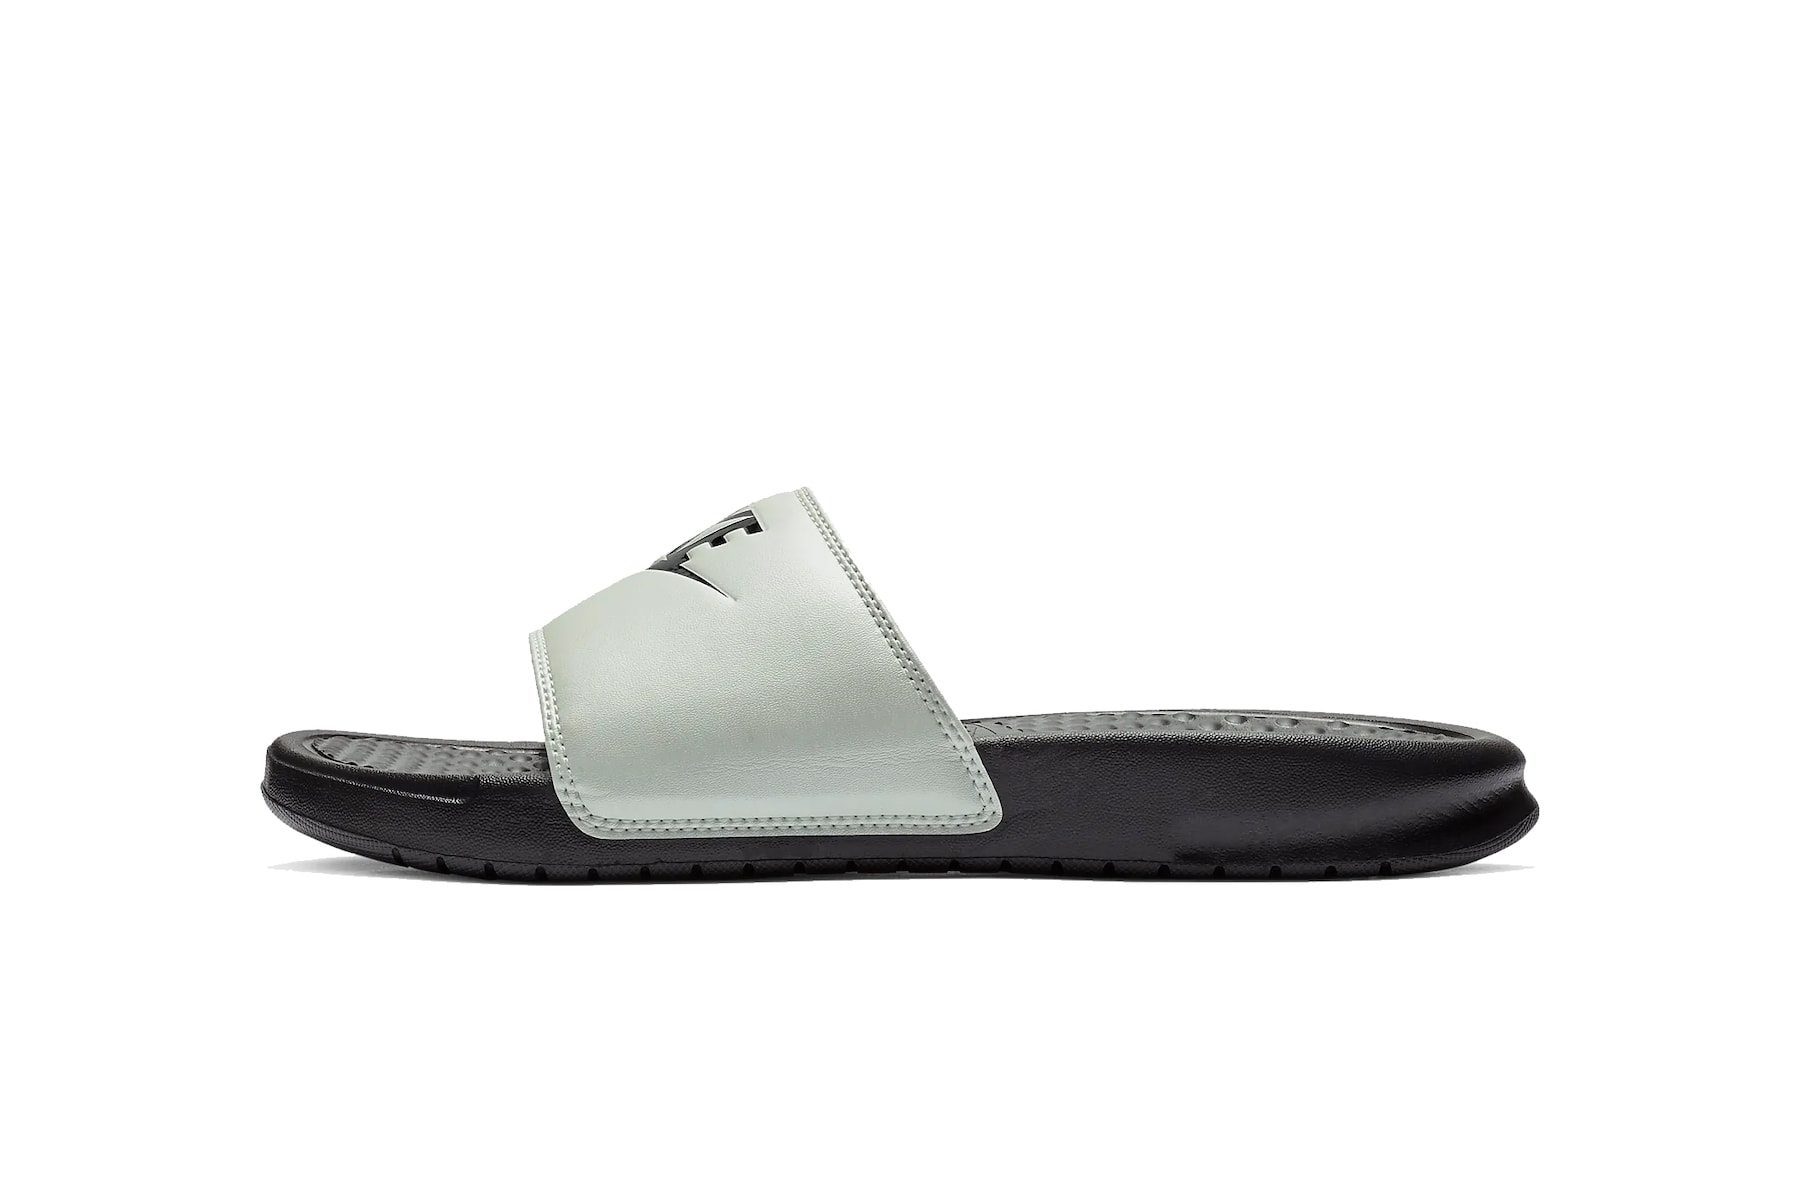 Nike Benassi Logo Slides Pink/White Summer Drop Black Sandal Pool Shoe Slippers Streetwear 